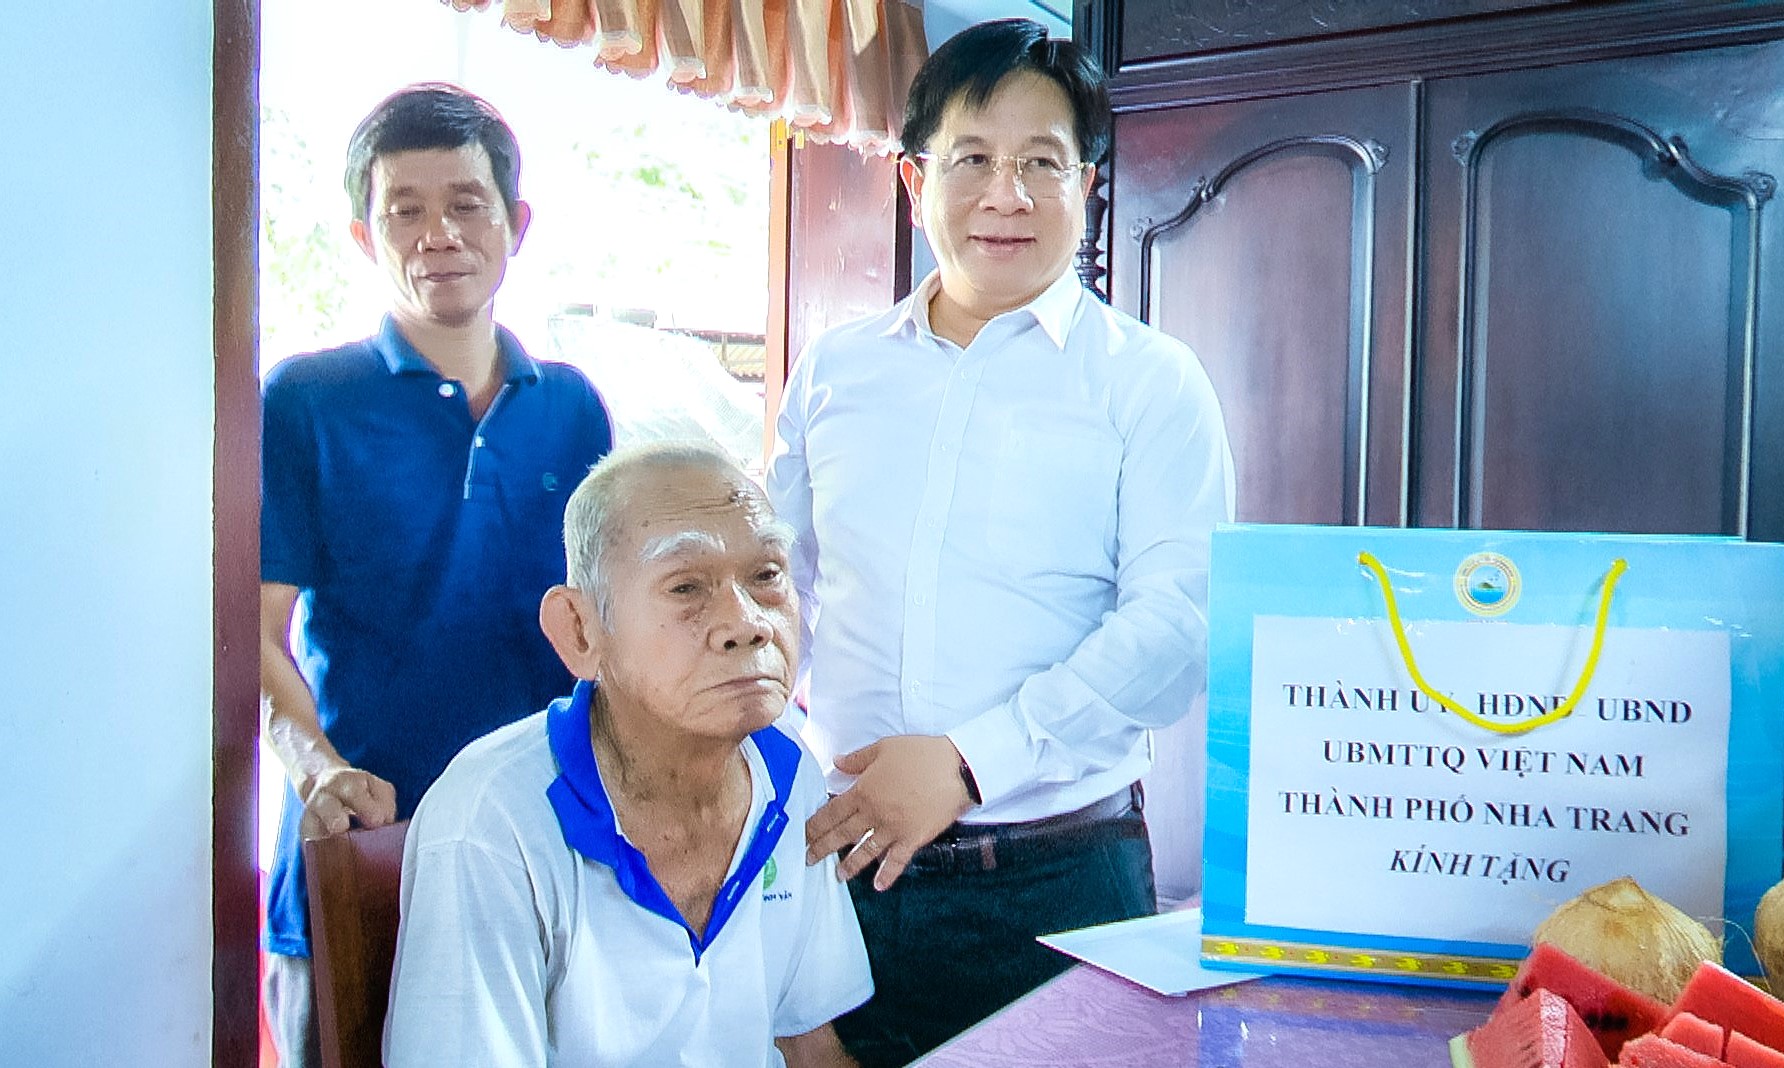 Đồng chí Hồ Văn Mừng - Ủy viên dự khuyết Trung ương Đảng, Bí thư Thành ủy Nha Trang thăm hỏi, trao quà cho người có công với cách mạng.